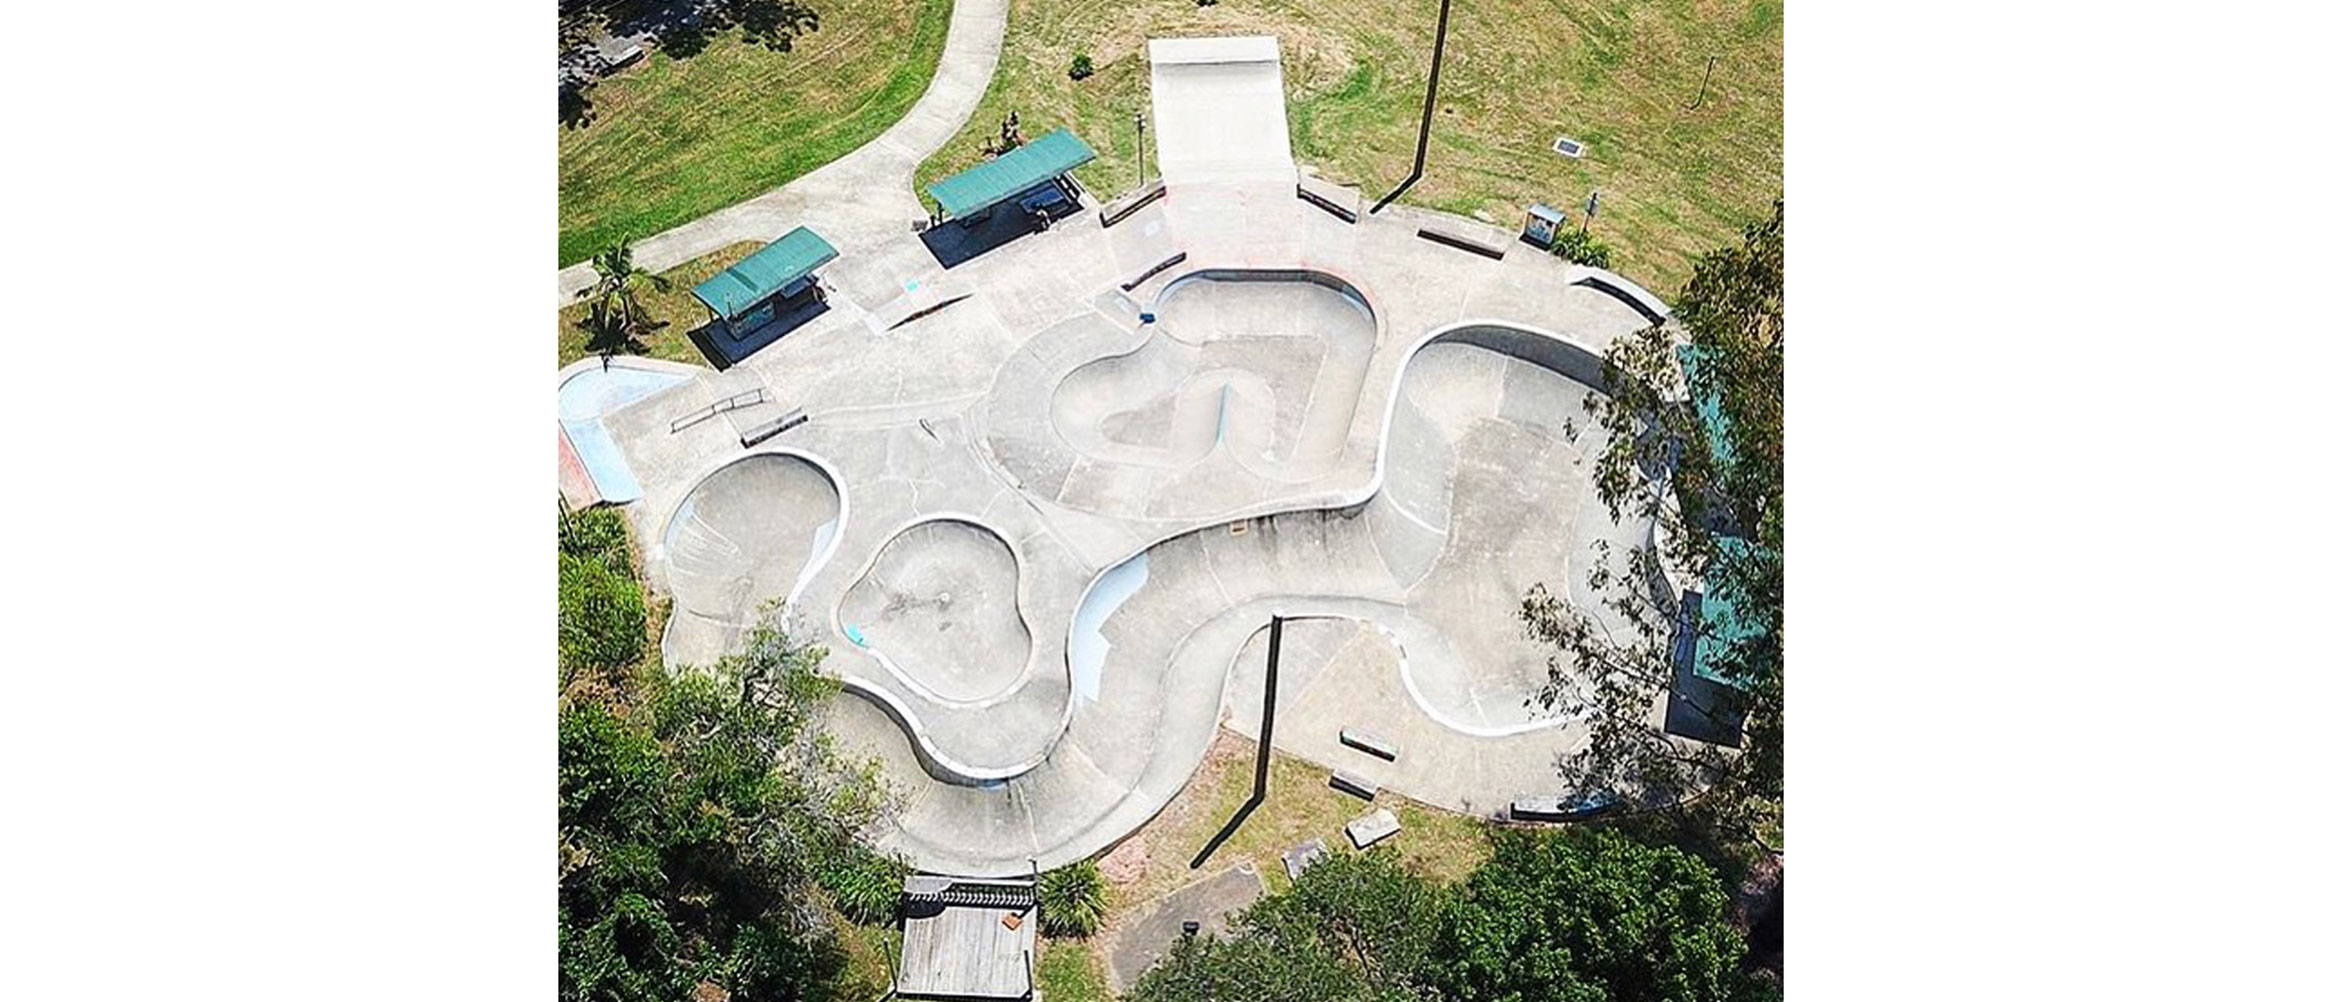 Nimbin skate park birds eye view, Concrete Skateparks design & construct